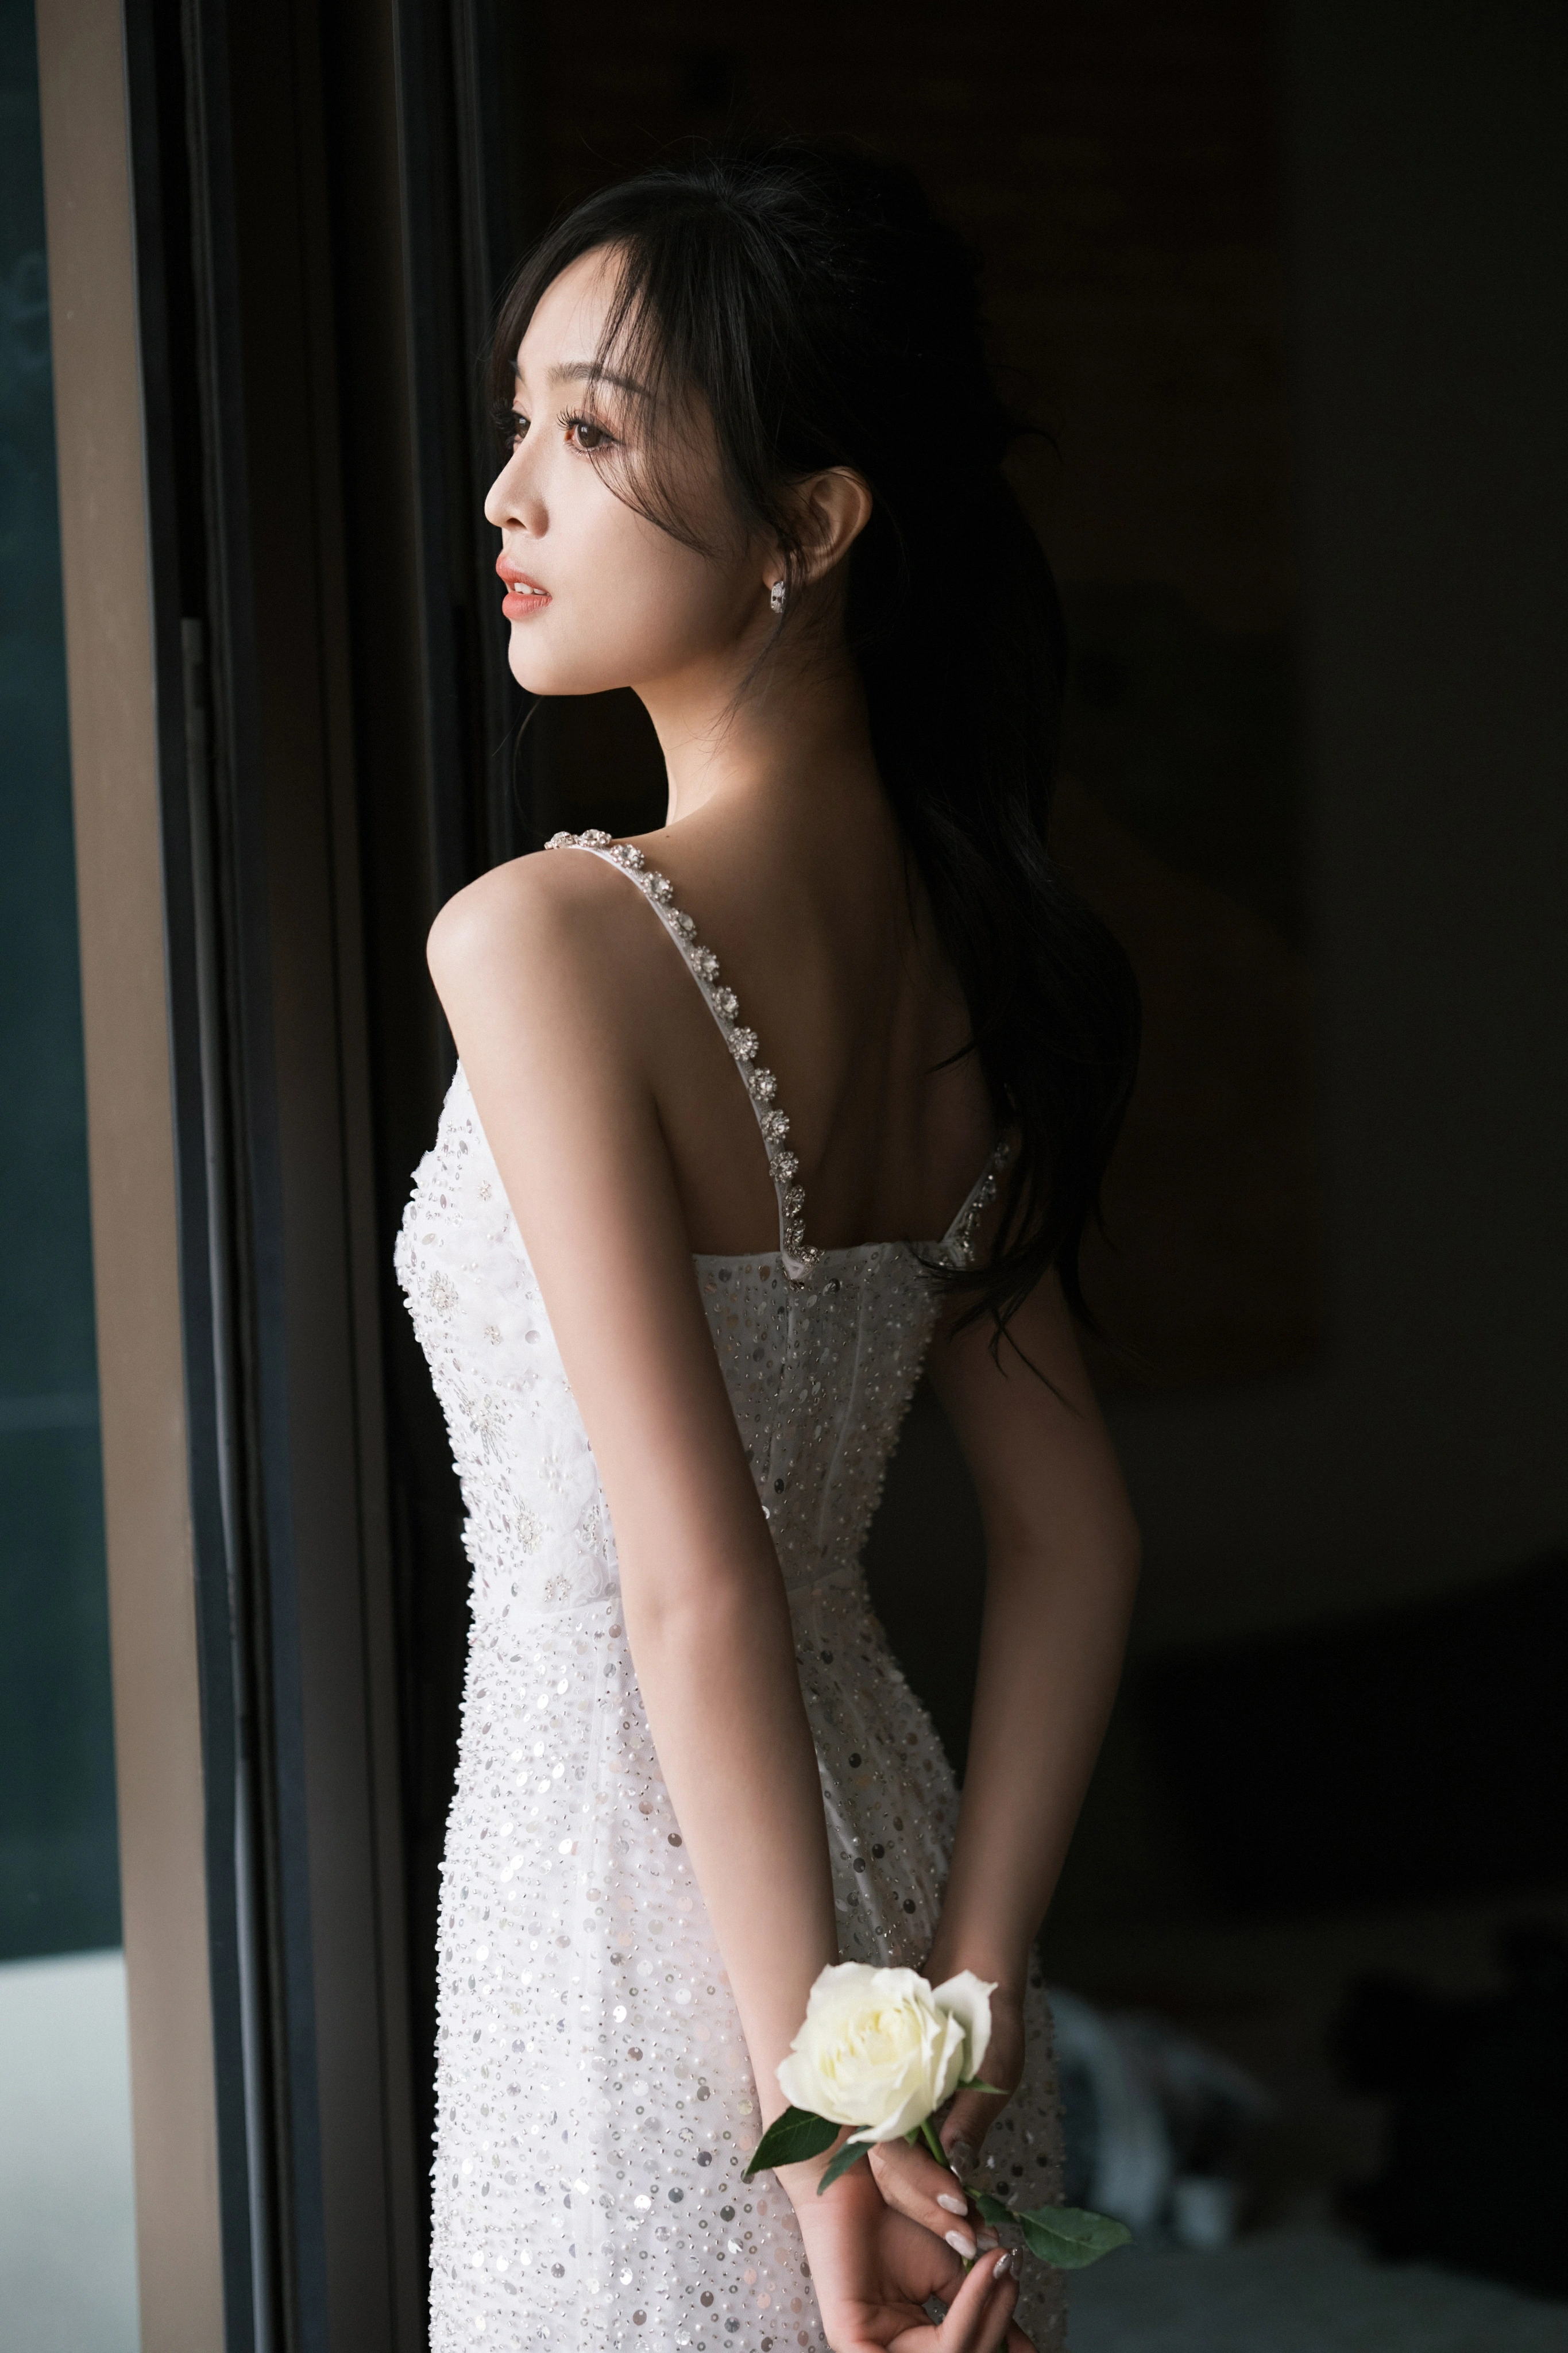 吴宣仪分享活动造型美照 白色亮片吊带裙秀身材曲线,1 (1)